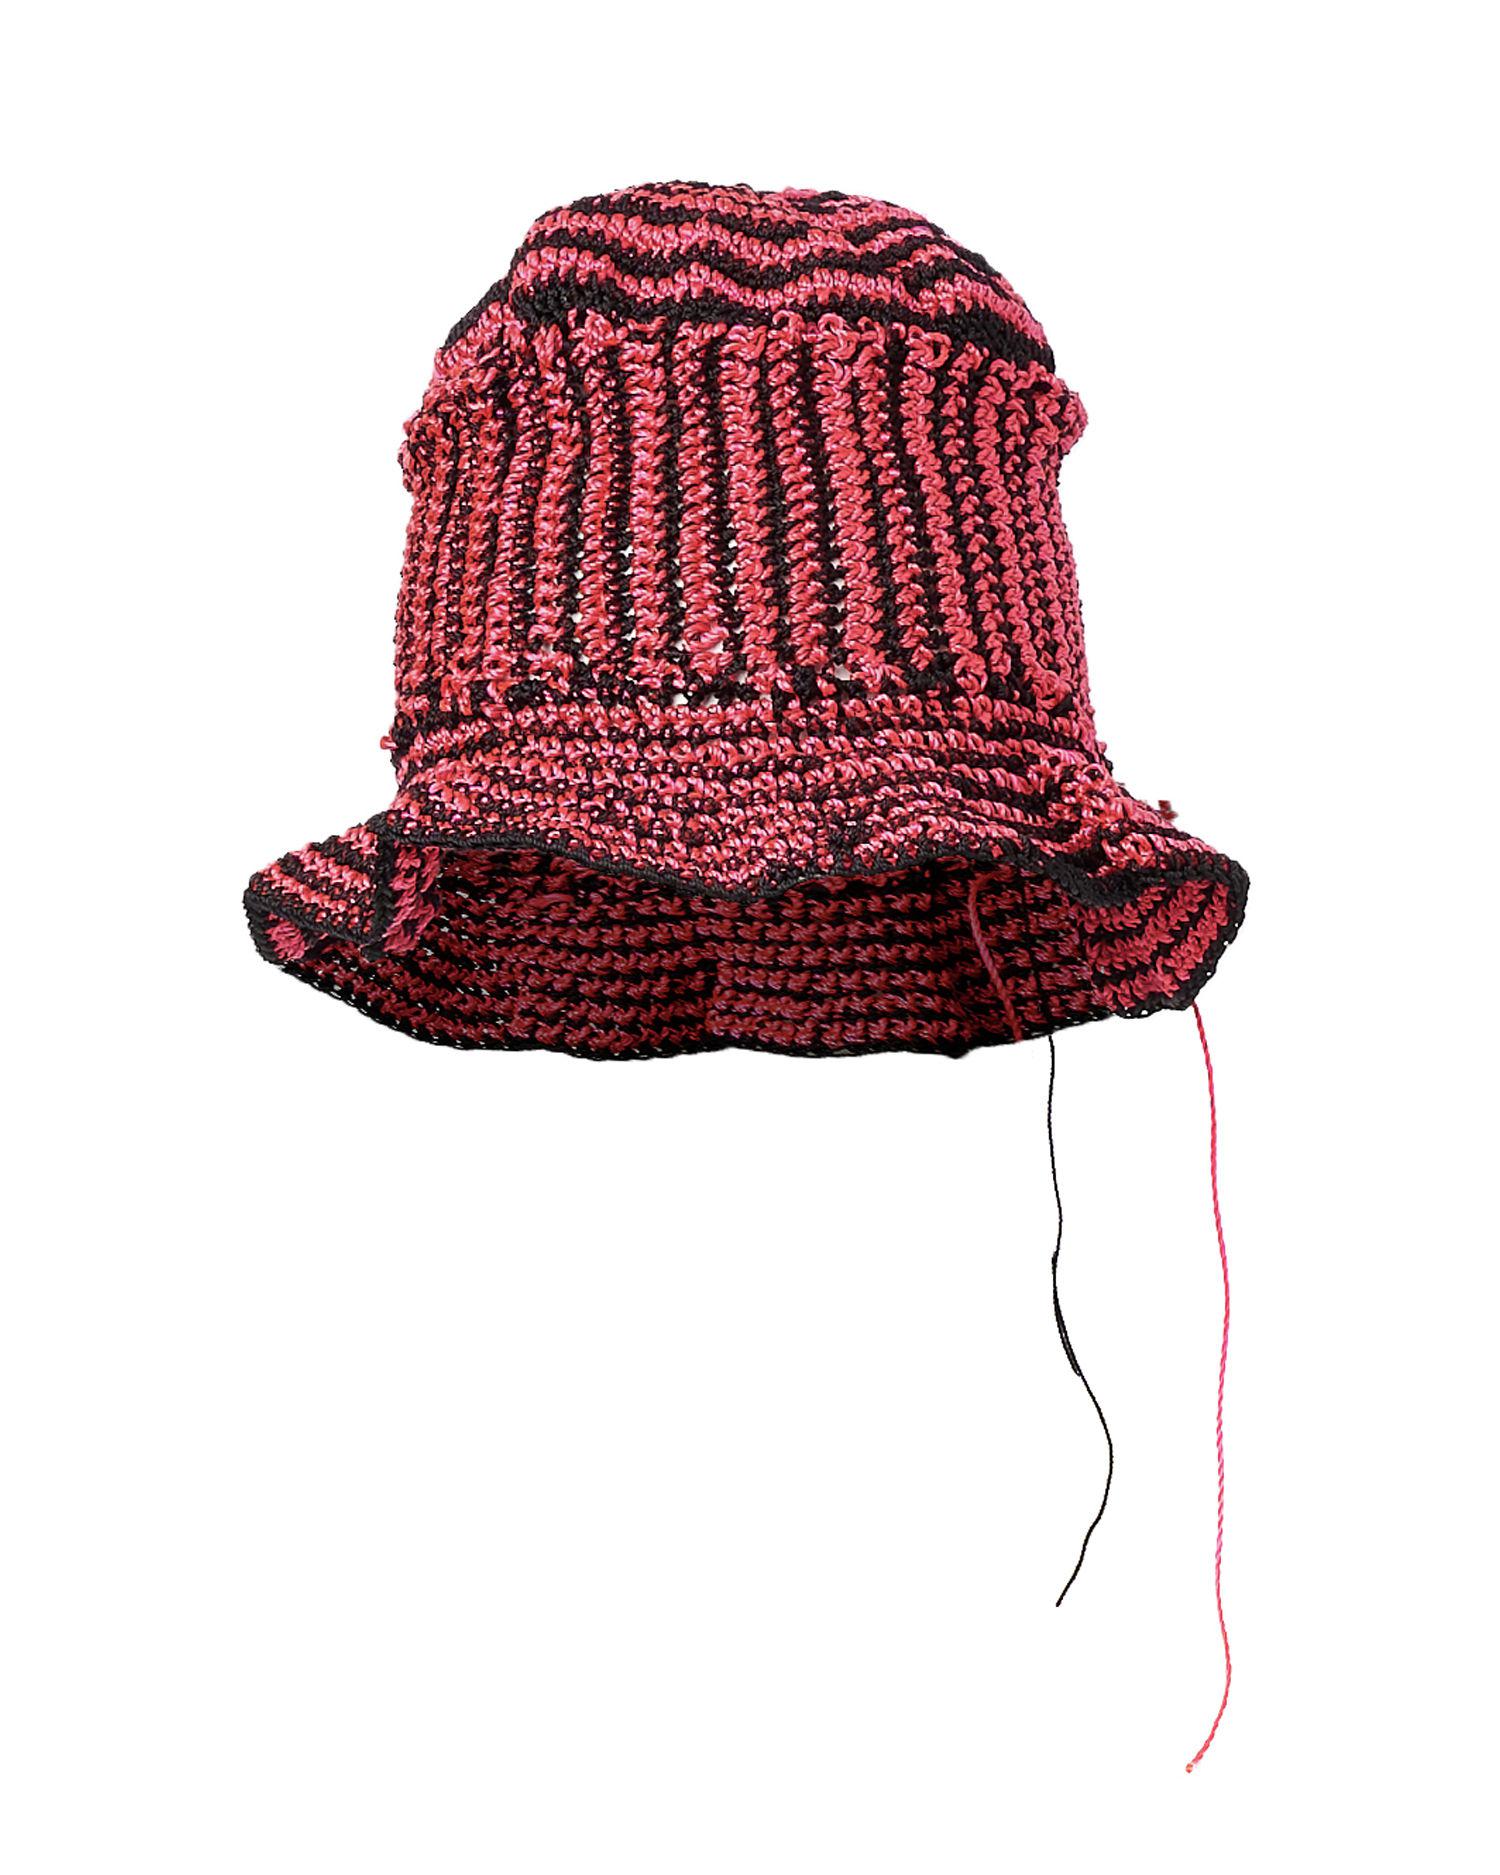 Crochet bucket hat by CHRISTIAN STONE